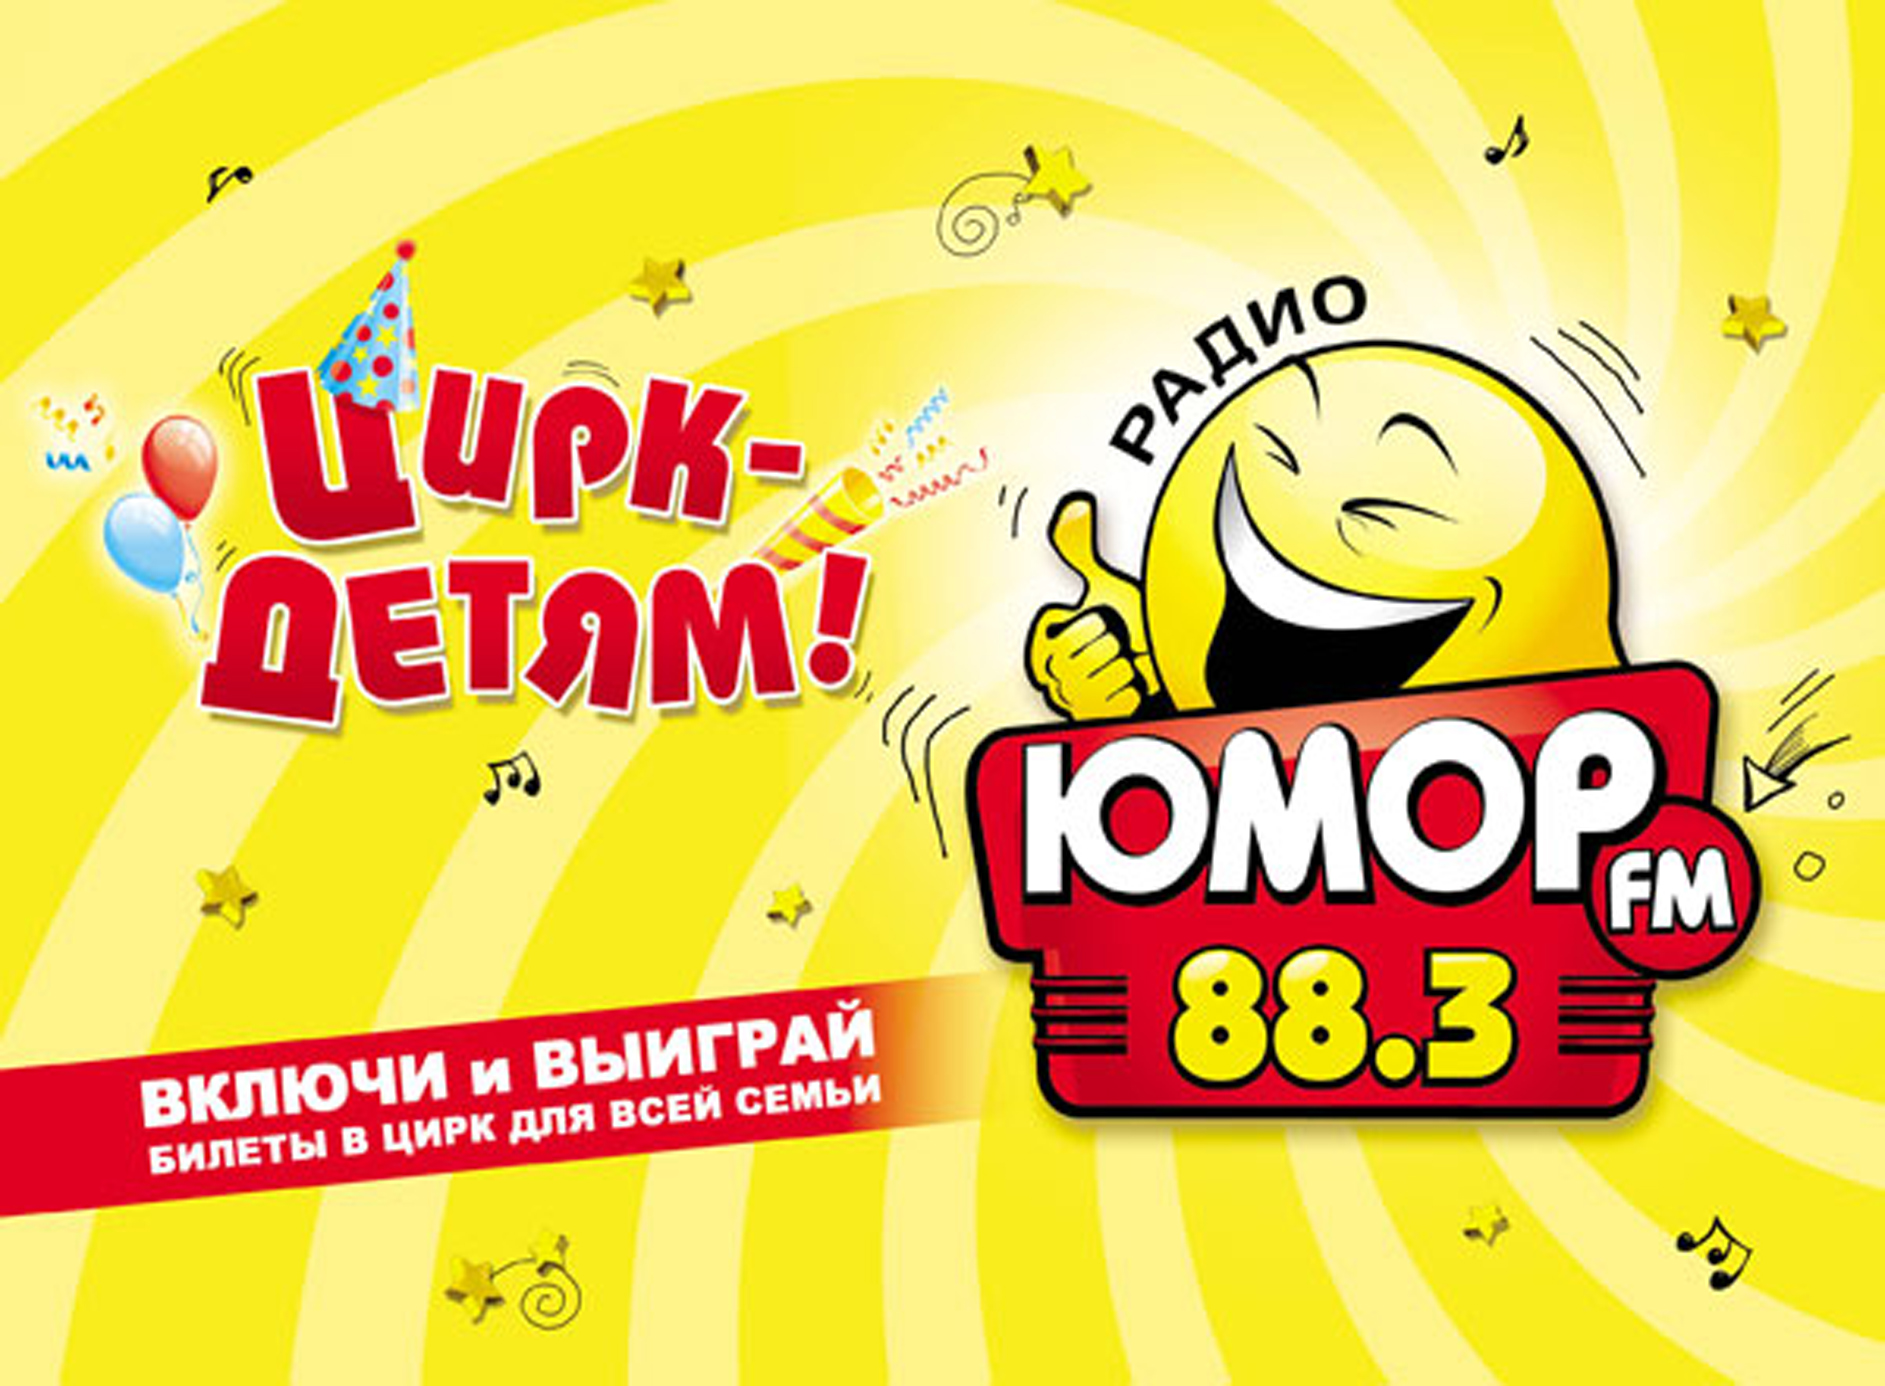 Юмор фм телефон прямого. Юмор fm. Юмор ФМ логотип. Радио юмор ФМ. Юмор fm Москва.